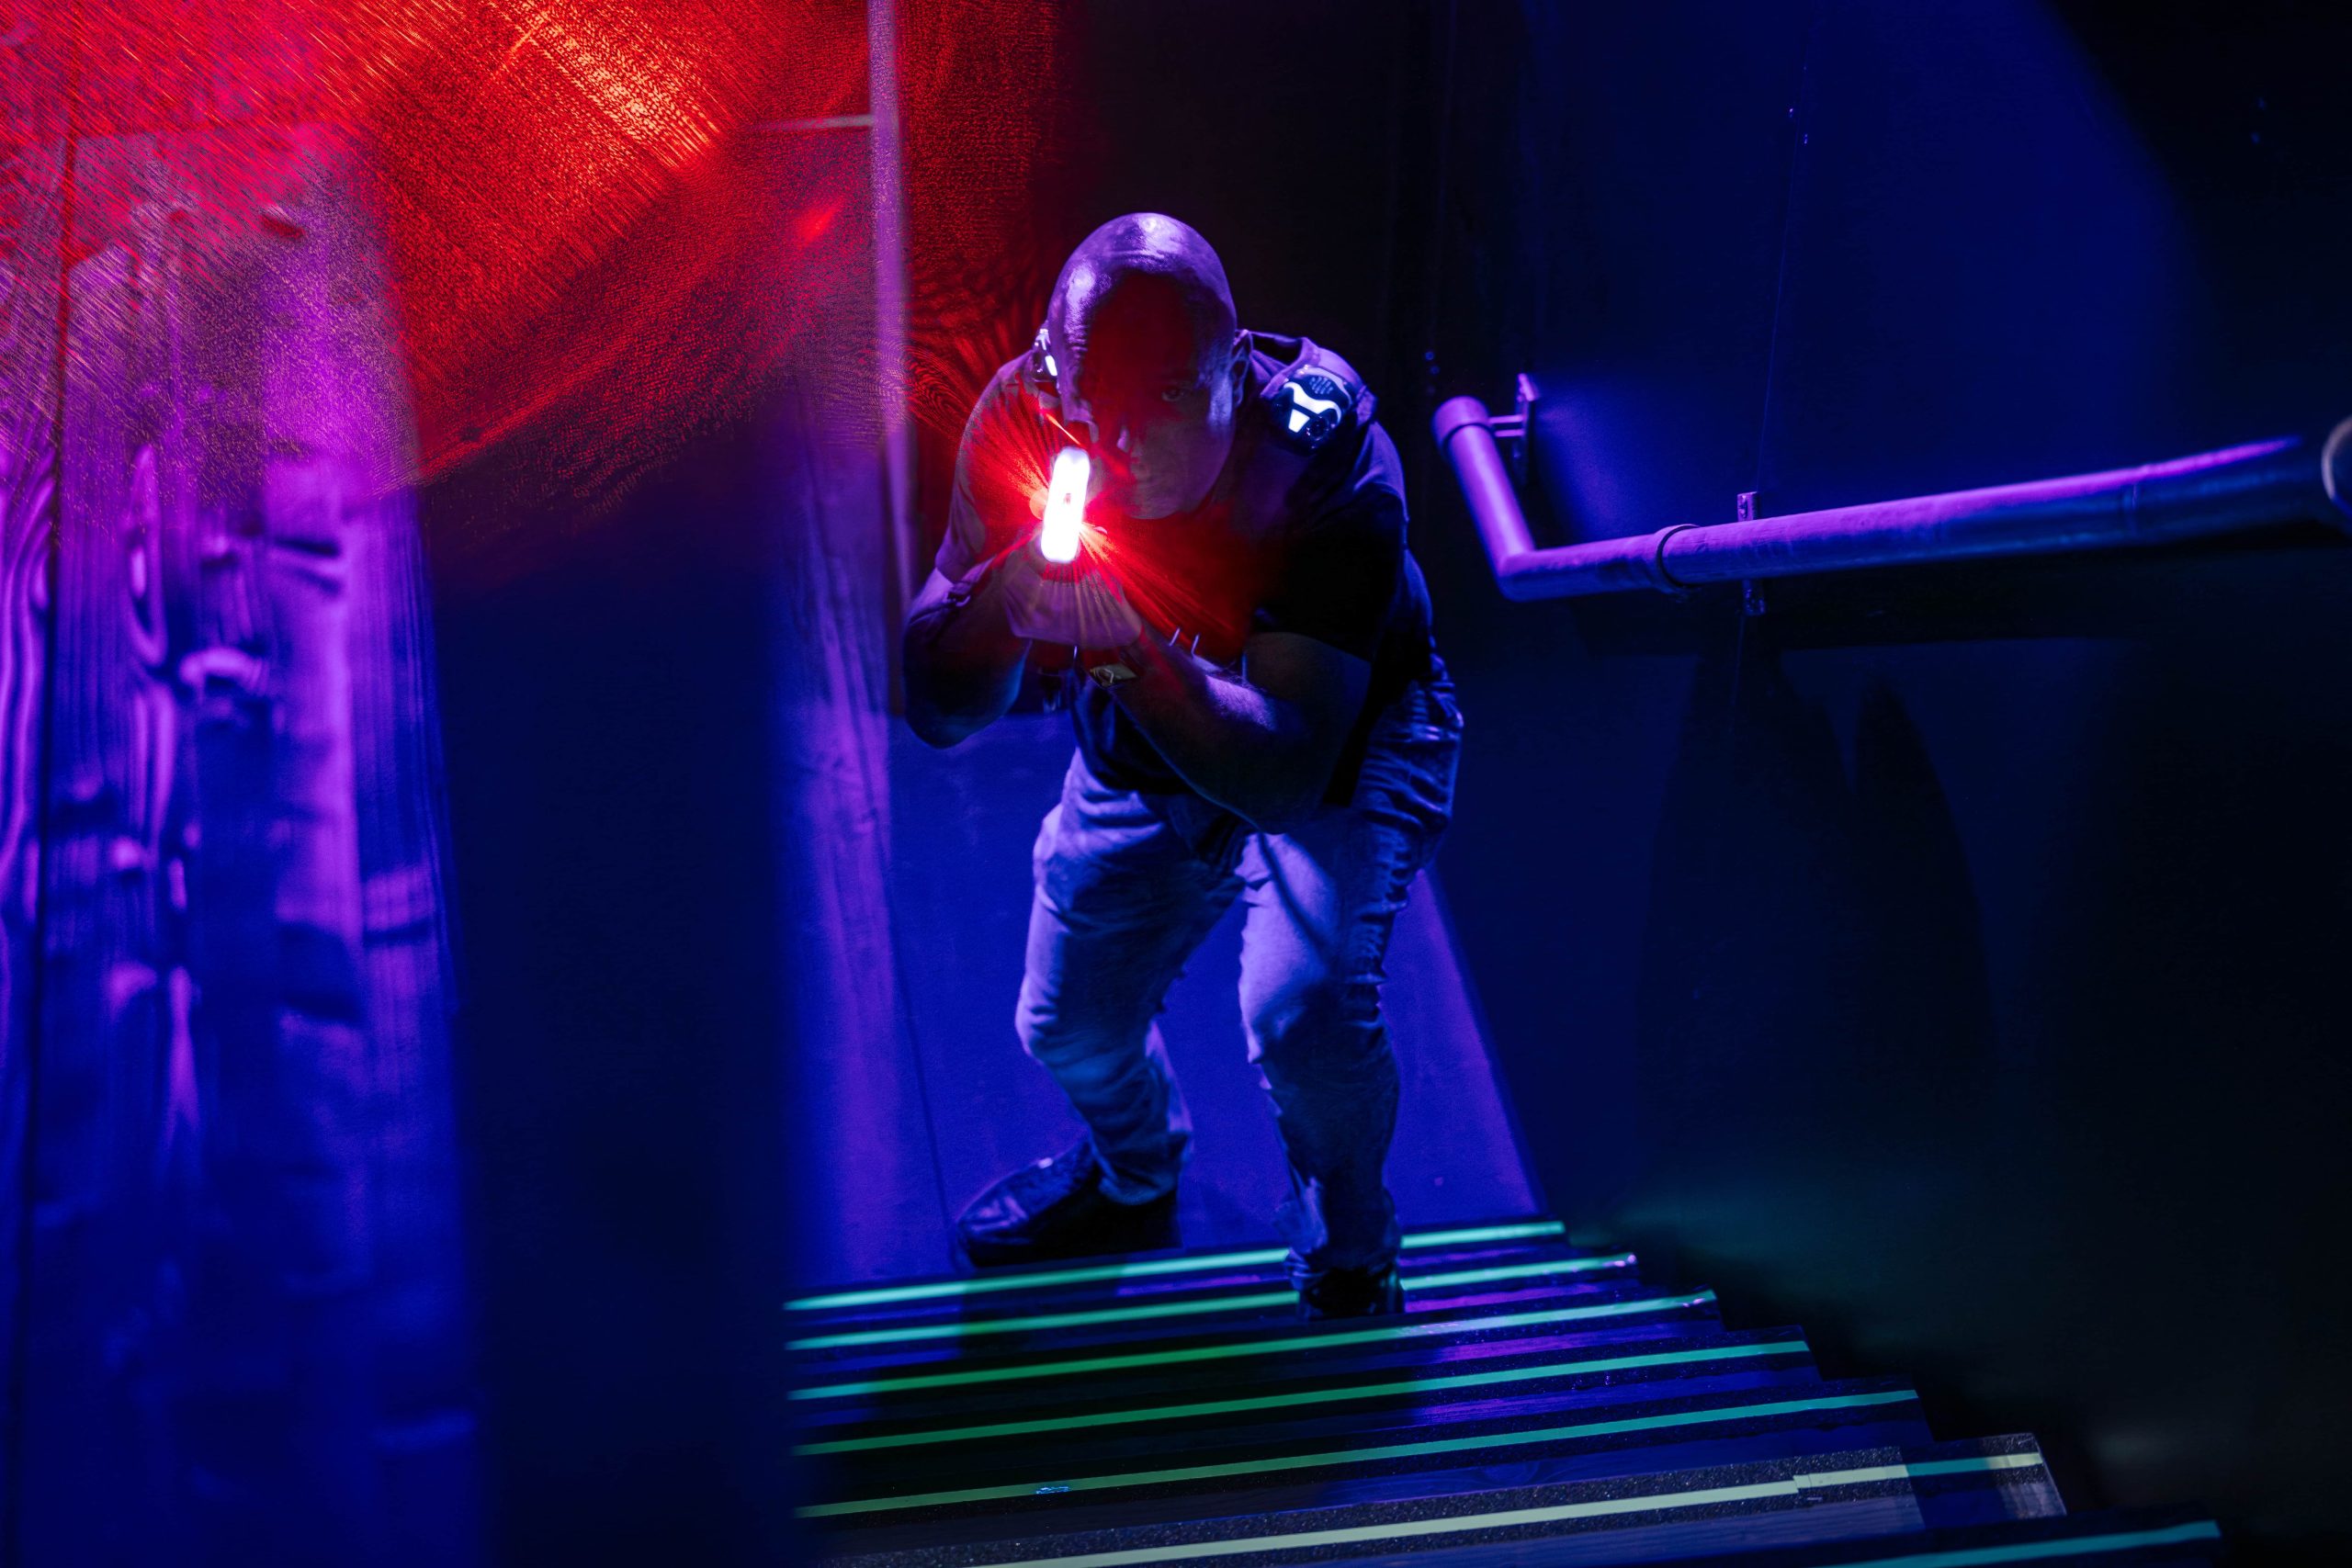 Spieler mit Lasertag-Ausrüstung bereit für Action in der neonbeleuchteten Arena.